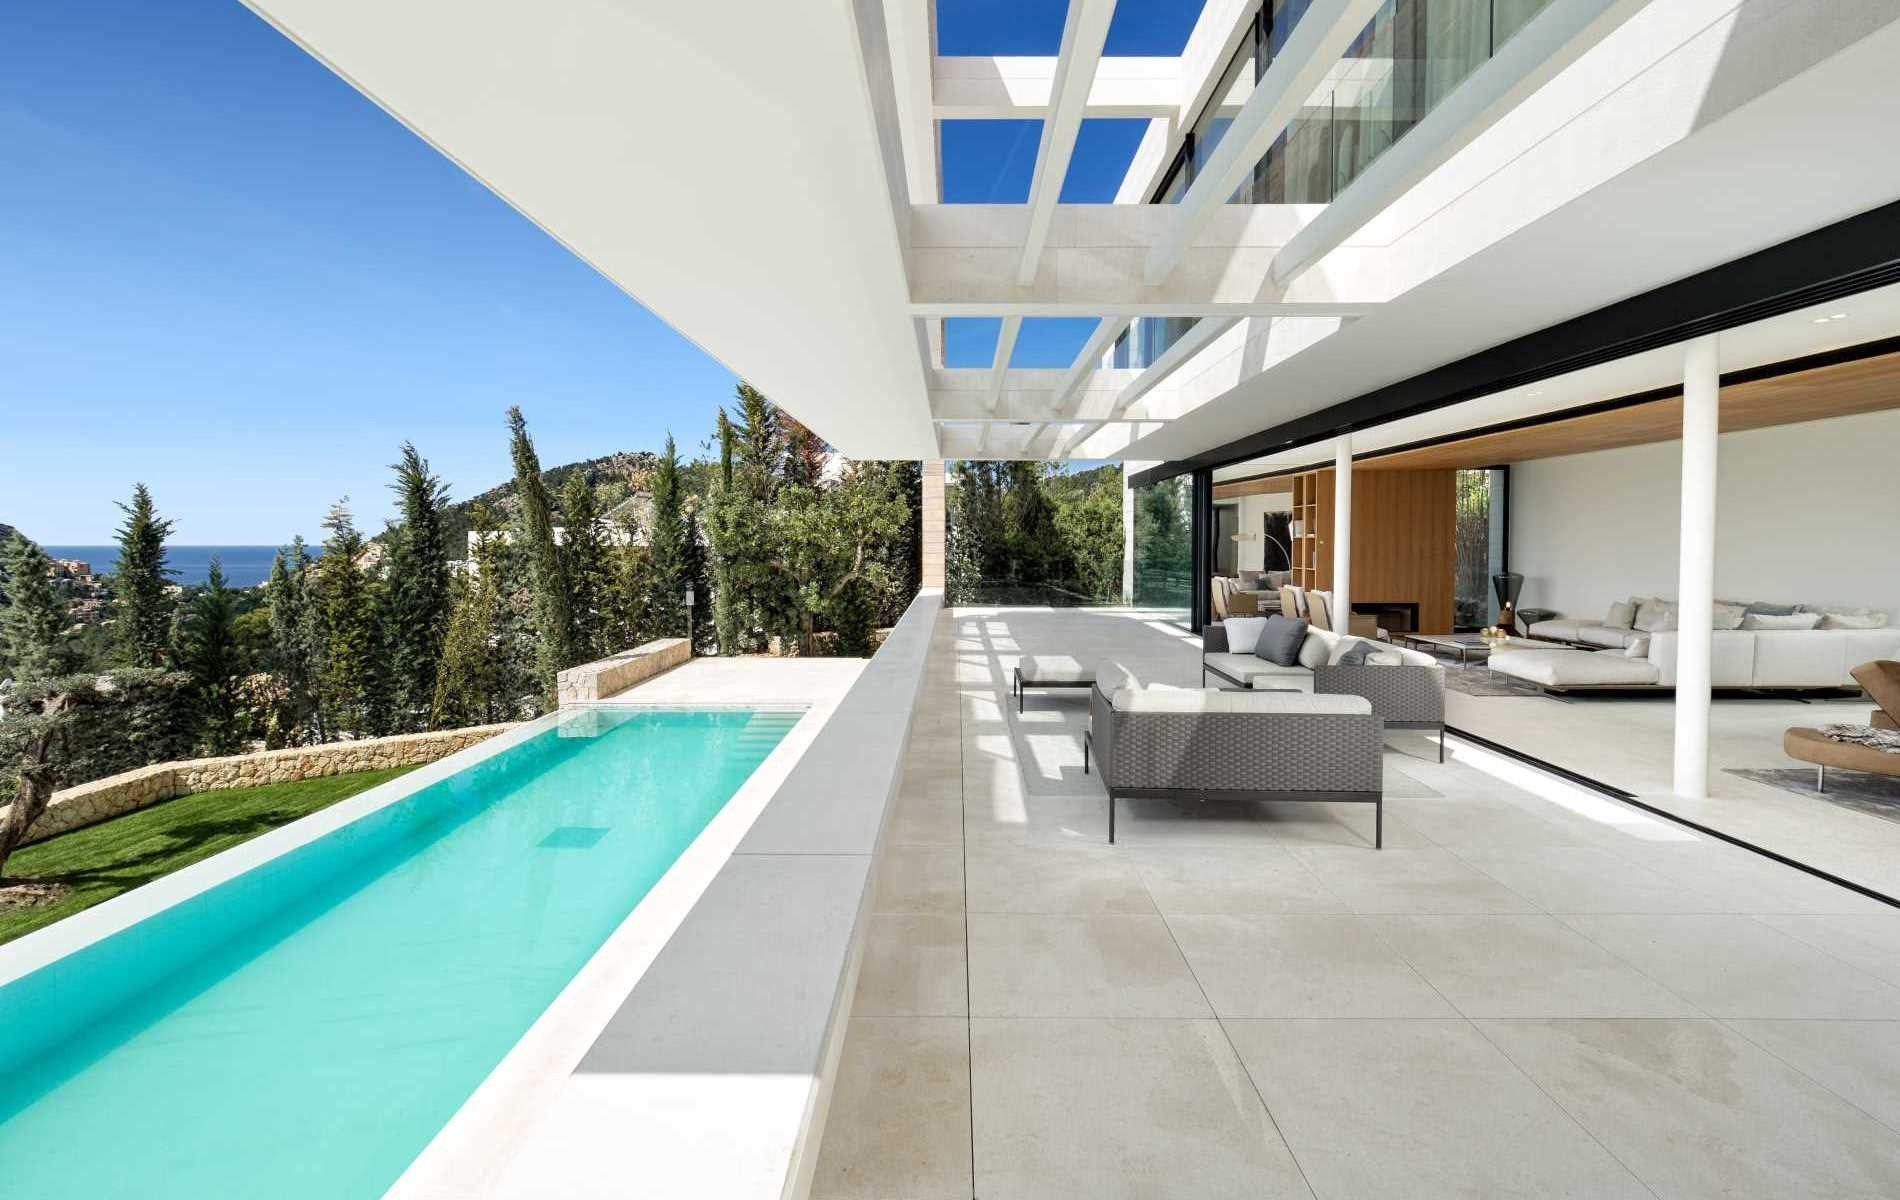 Luxury villa on Montport - Terrace with pool area